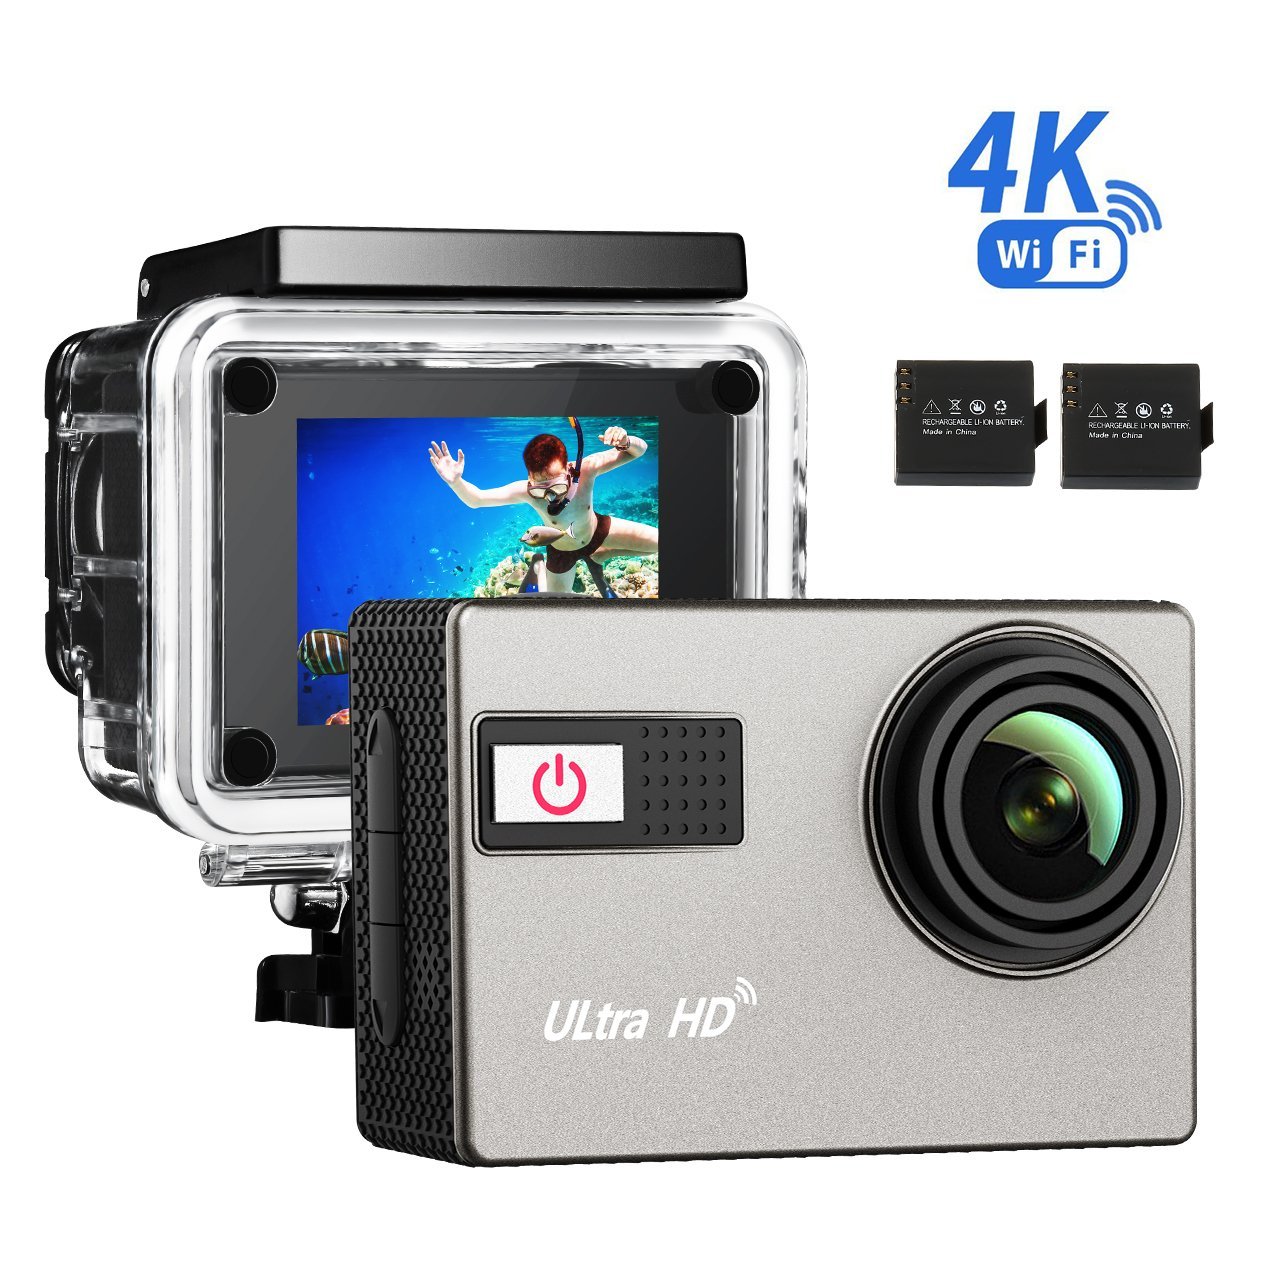 Bild zu 4K Action-Kamera TopElek 2.0 mit zwei Akkus und Zubehör für 49,59€